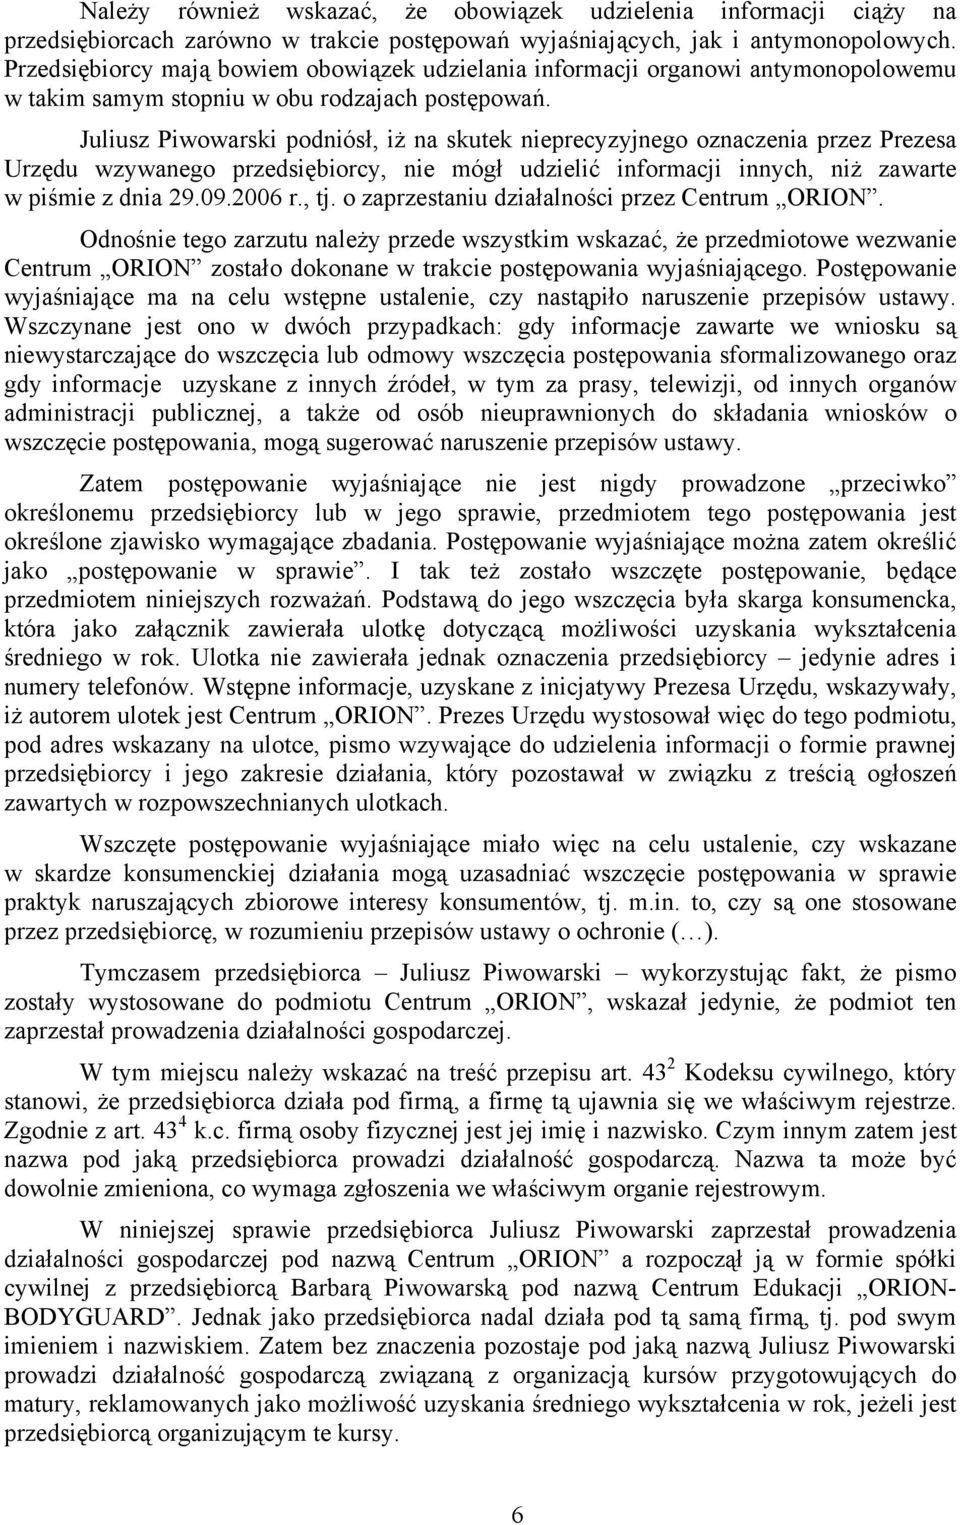 Juliusz Piwowarski podniósł, iż na skutek nieprecyzyjnego oznaczenia przez Prezesa Urzędu wzywanego przedsiębiorcy, nie mógł udzielić informacji innych, niż zawarte w piśmie z dnia 29.09.2006 r., tj.